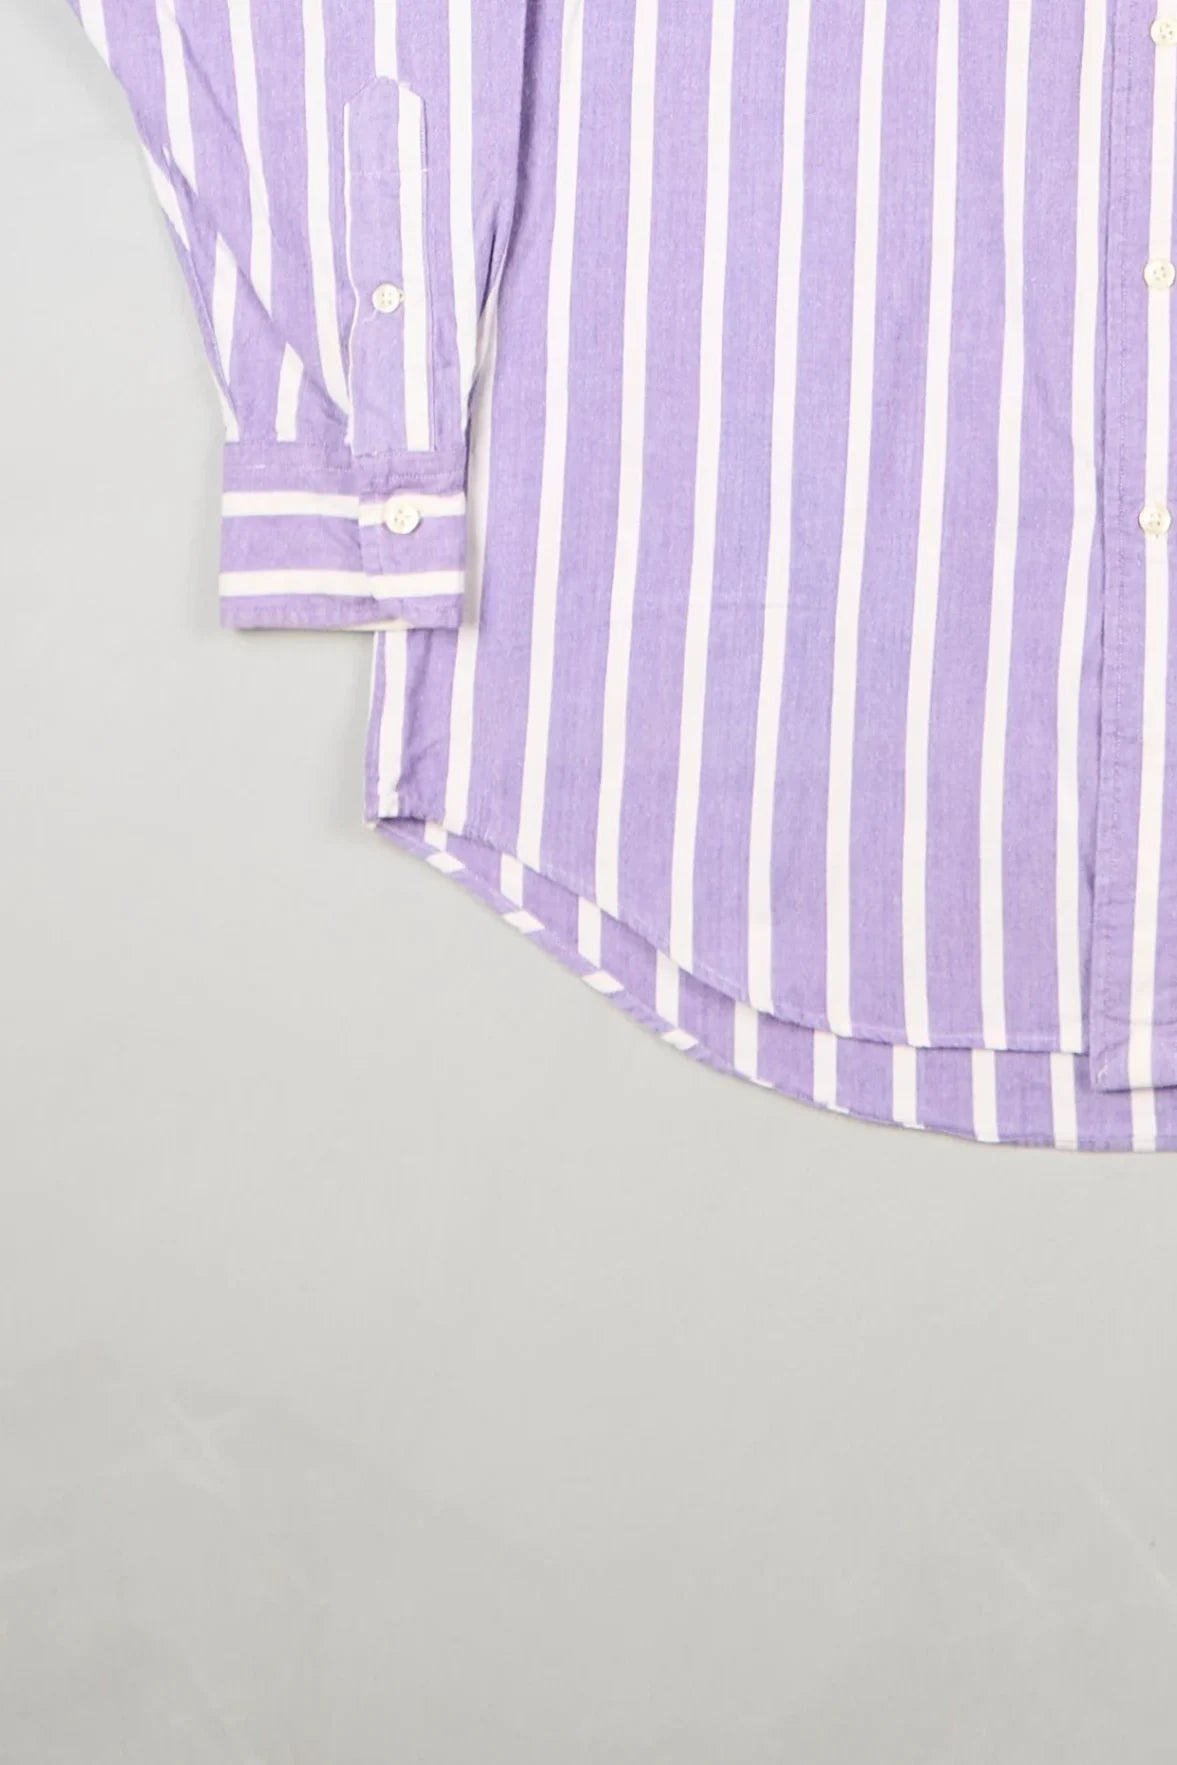 Ralph Lauren - Shirt (M) Bottom Left